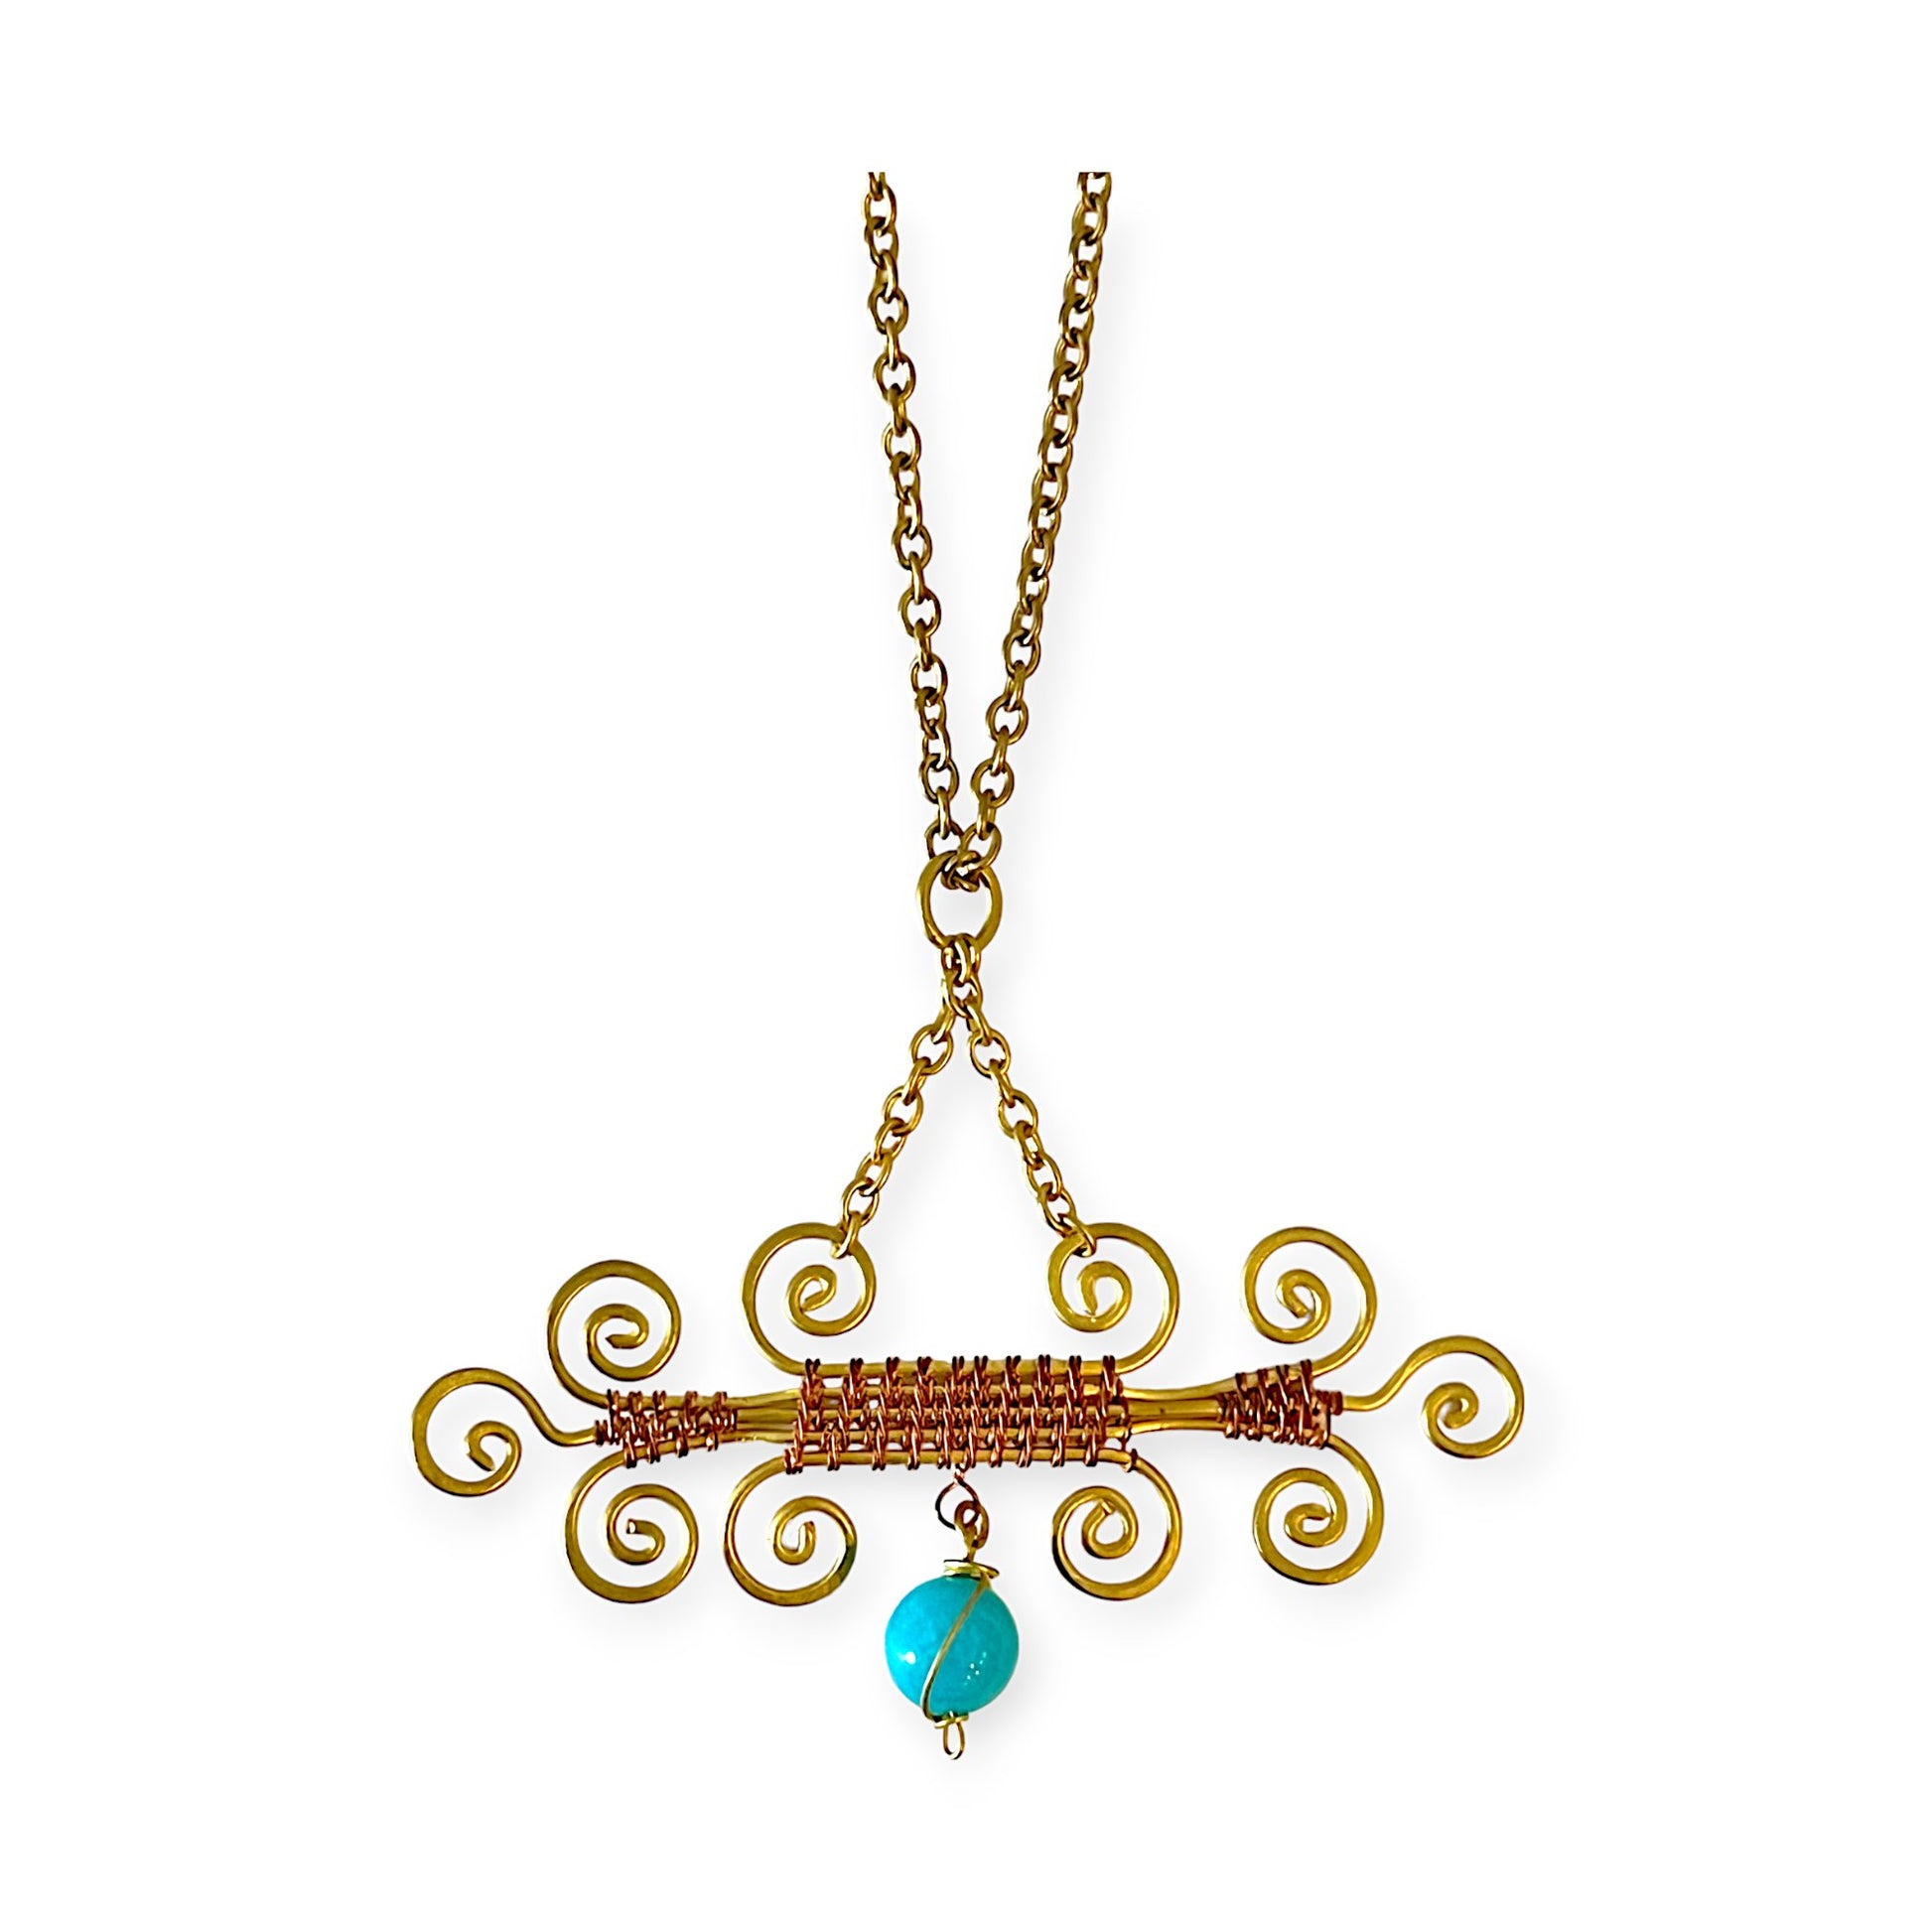 Colorful scroll designed pendant necklace - Sundara Joon